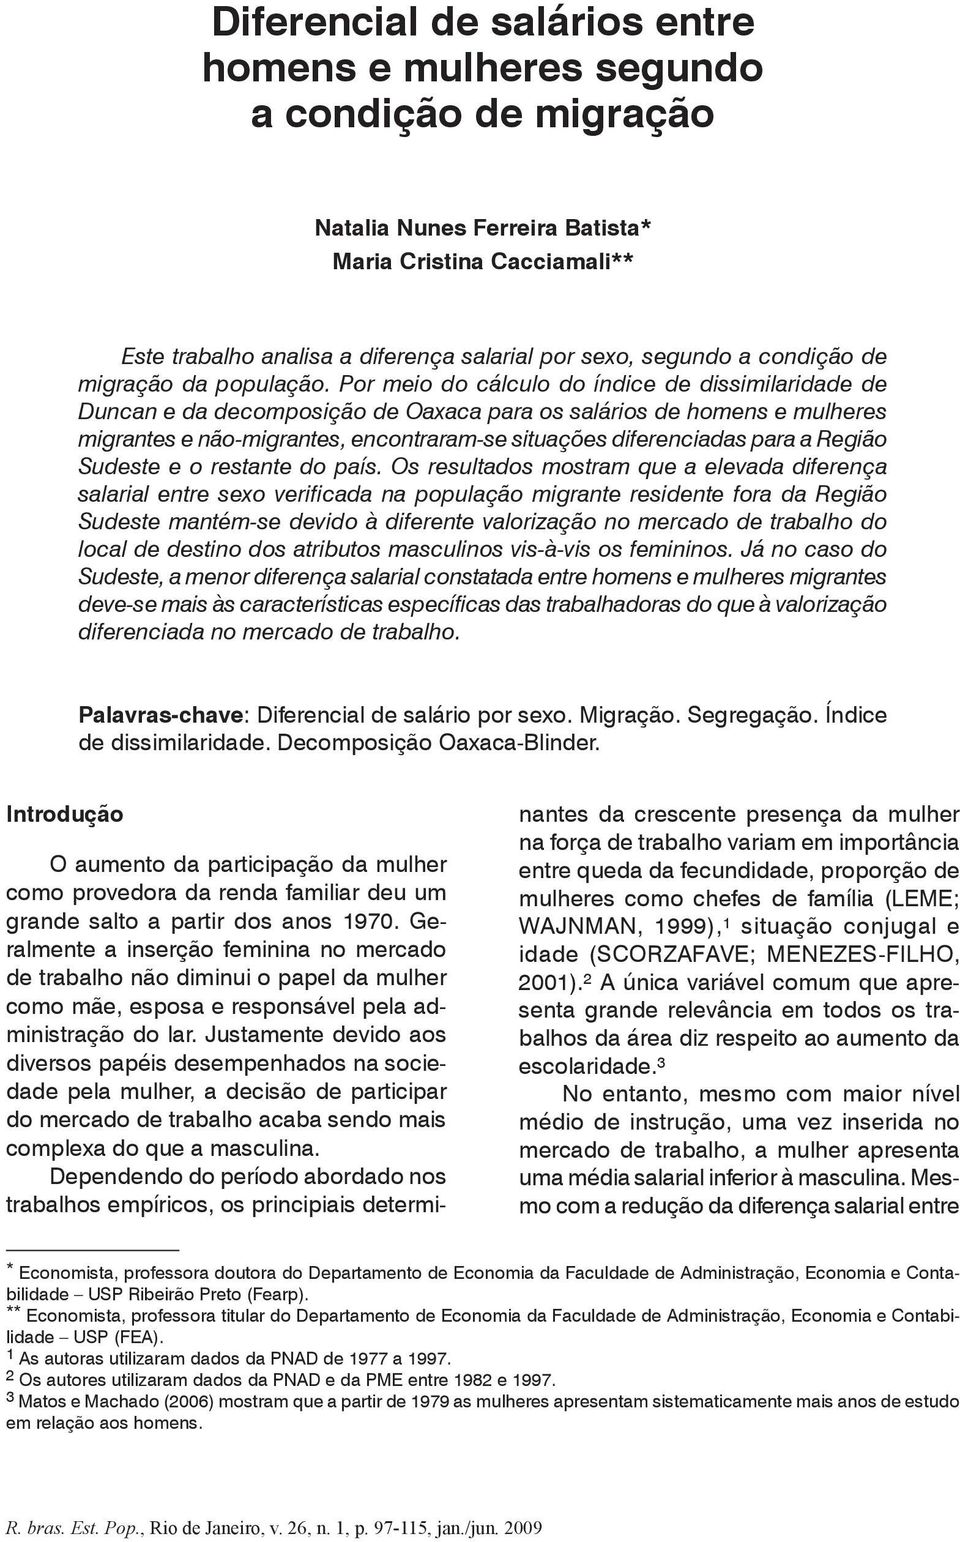 Por meio do cálculo do índice de dissimilaridade de Duncan e da decomposição de Oaxaca para os salários de homens e mulheres migrantes e não-migrantes, encontraram-se situações diferenciadas para a